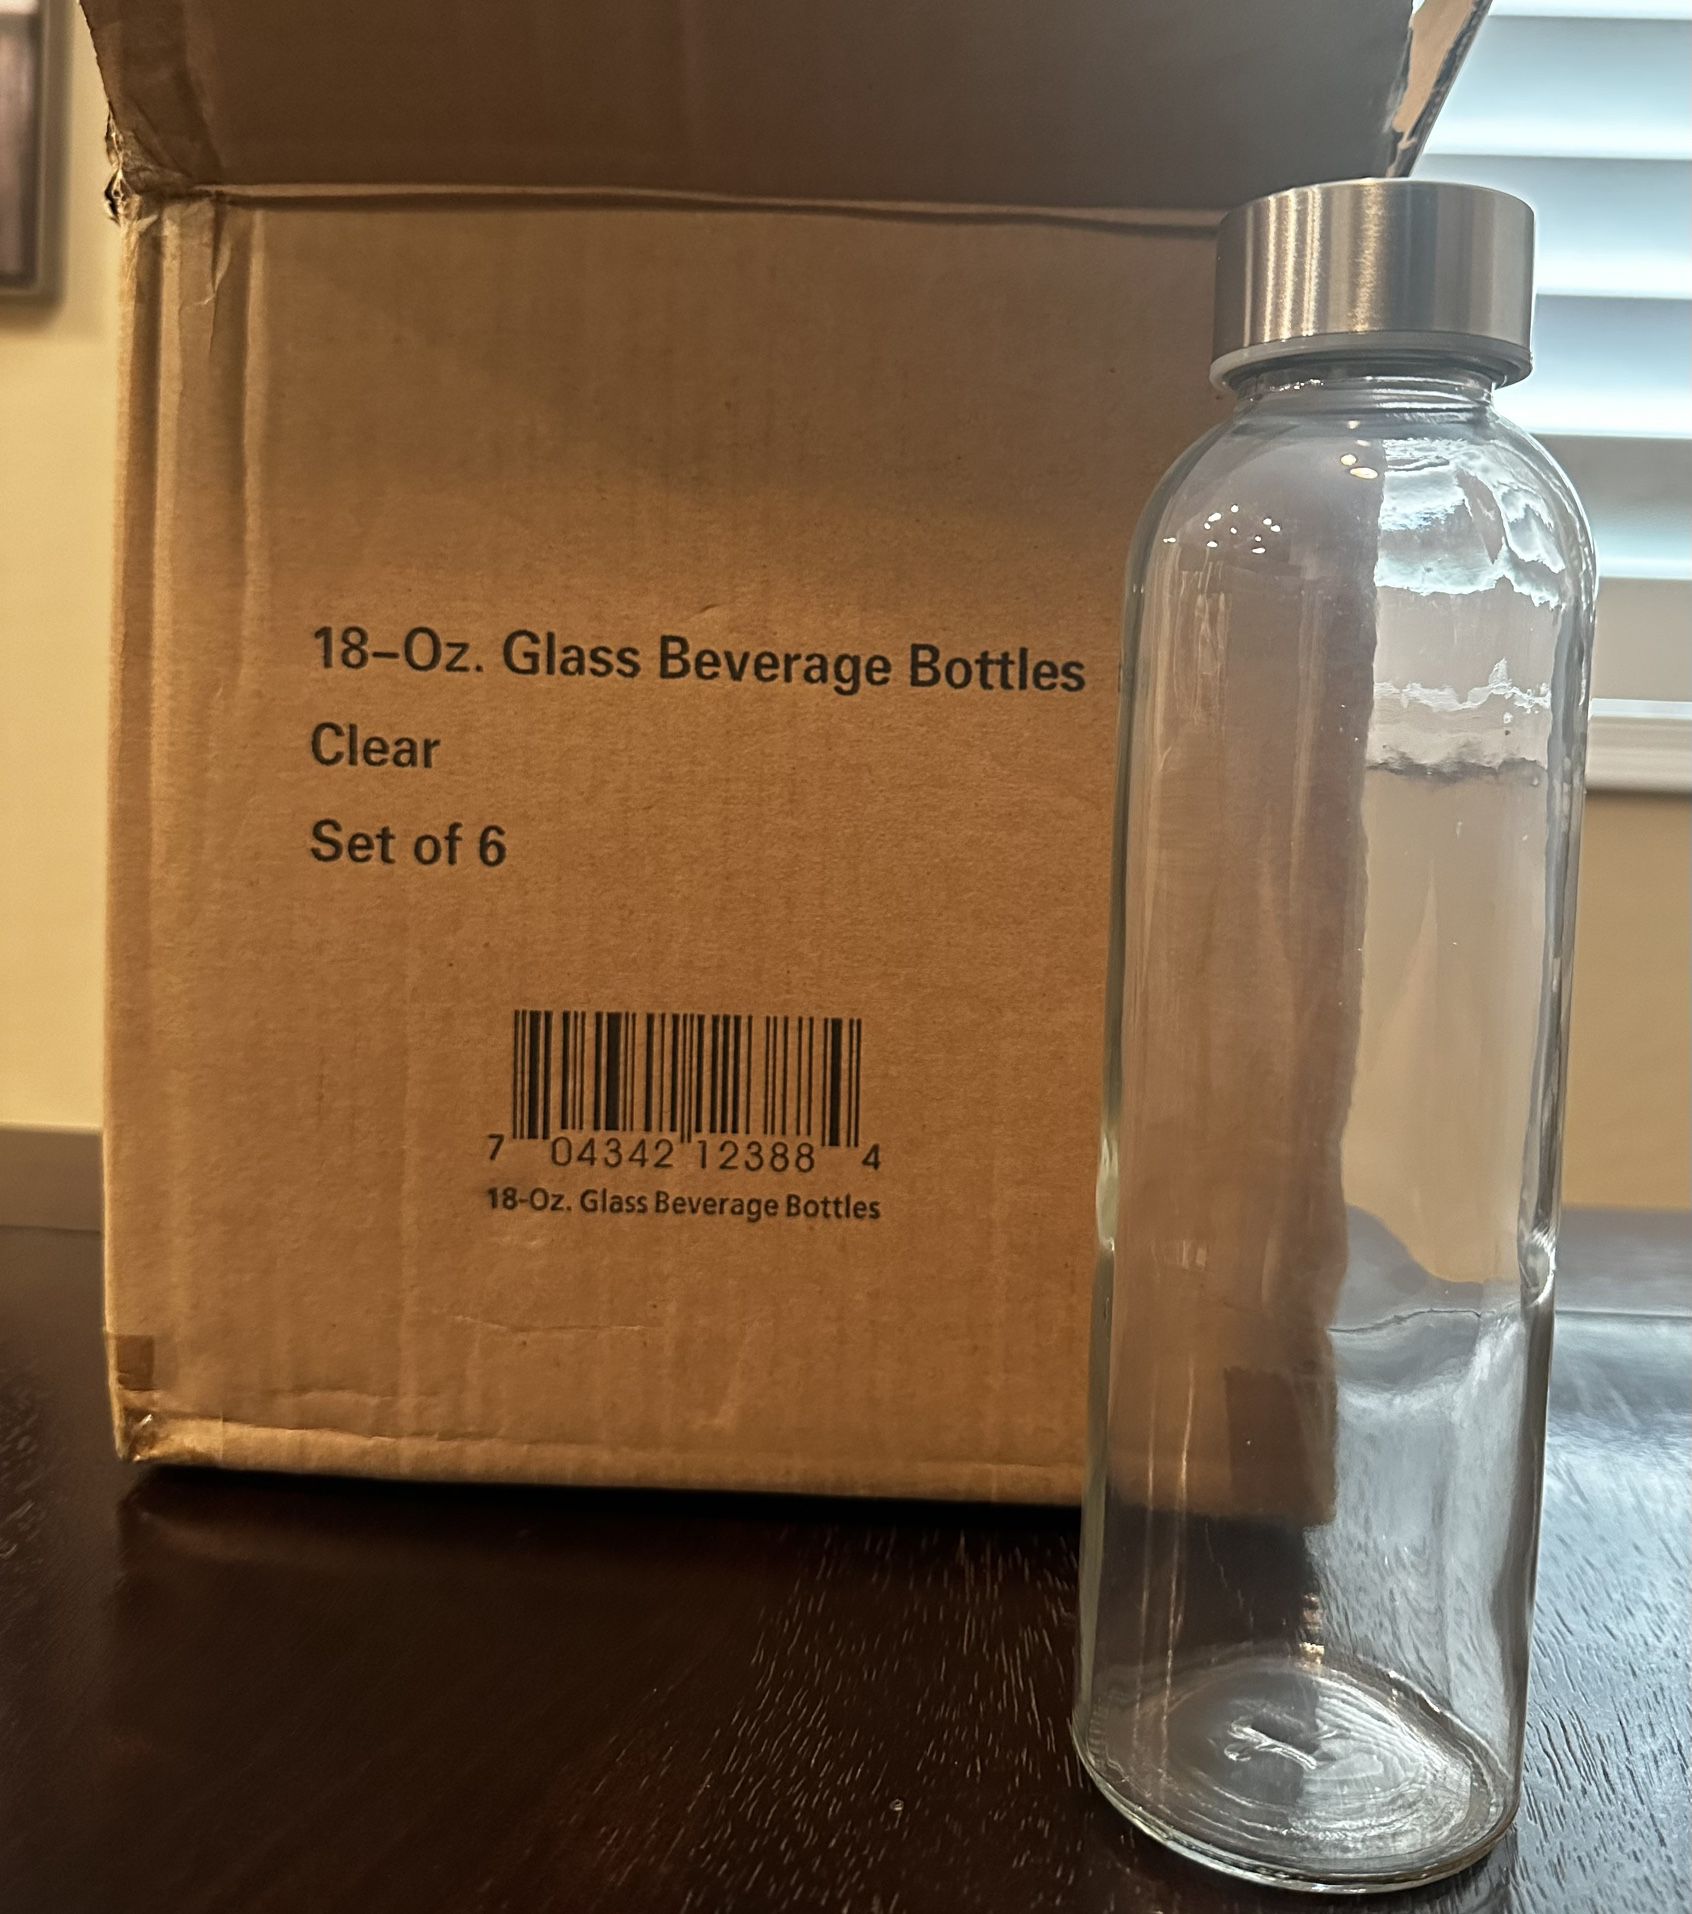 Epica + Epica 18-Oz. Glass Beverage Bottles, Set of 6